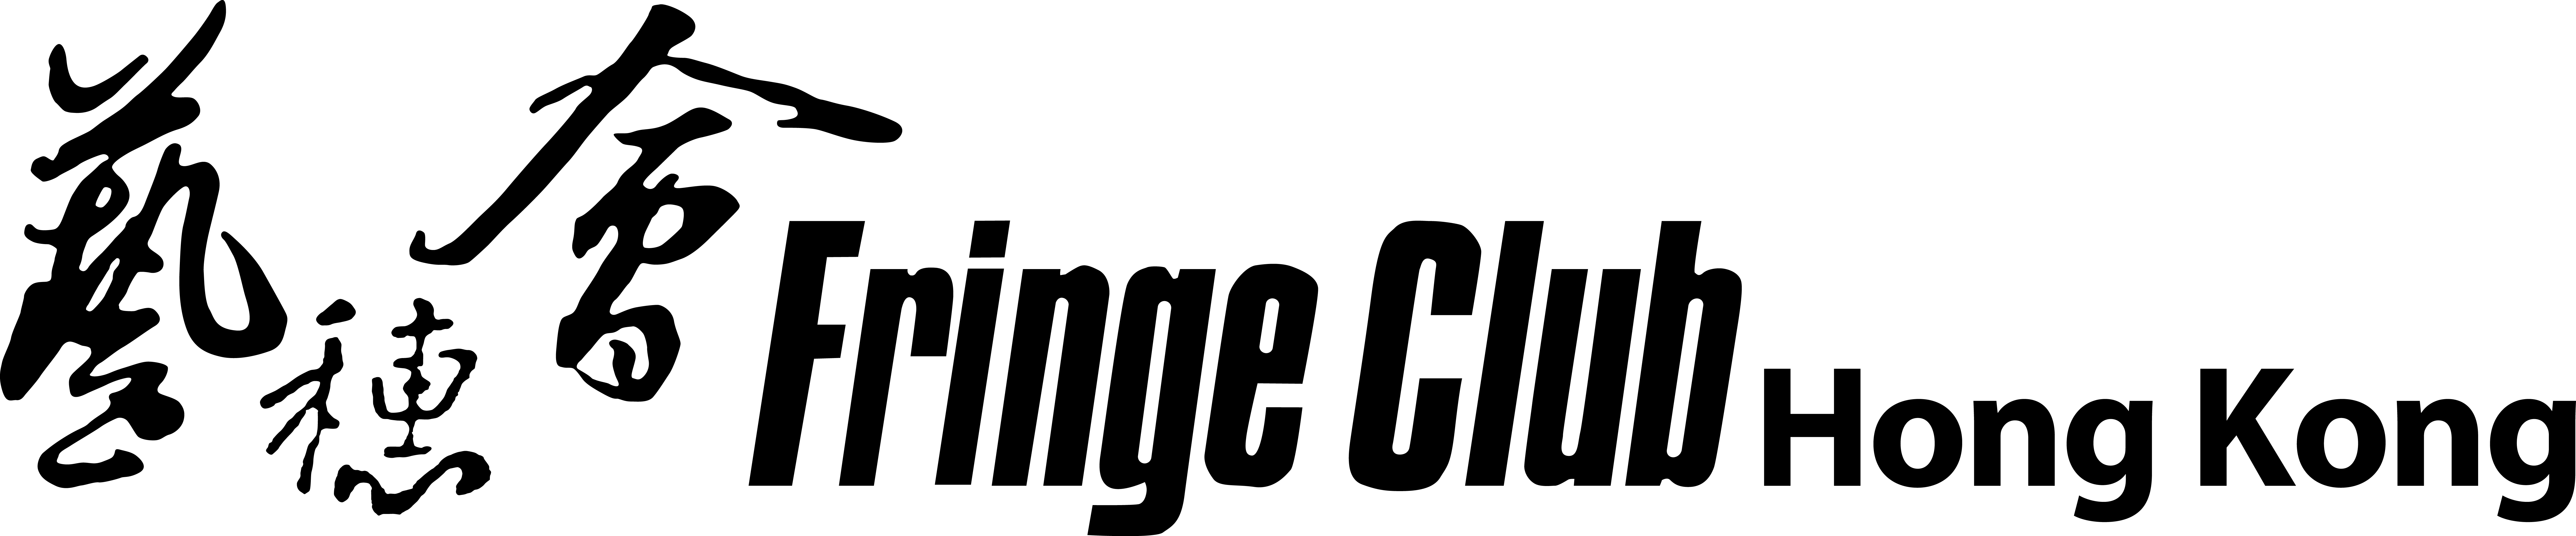 Fringe Club Logo